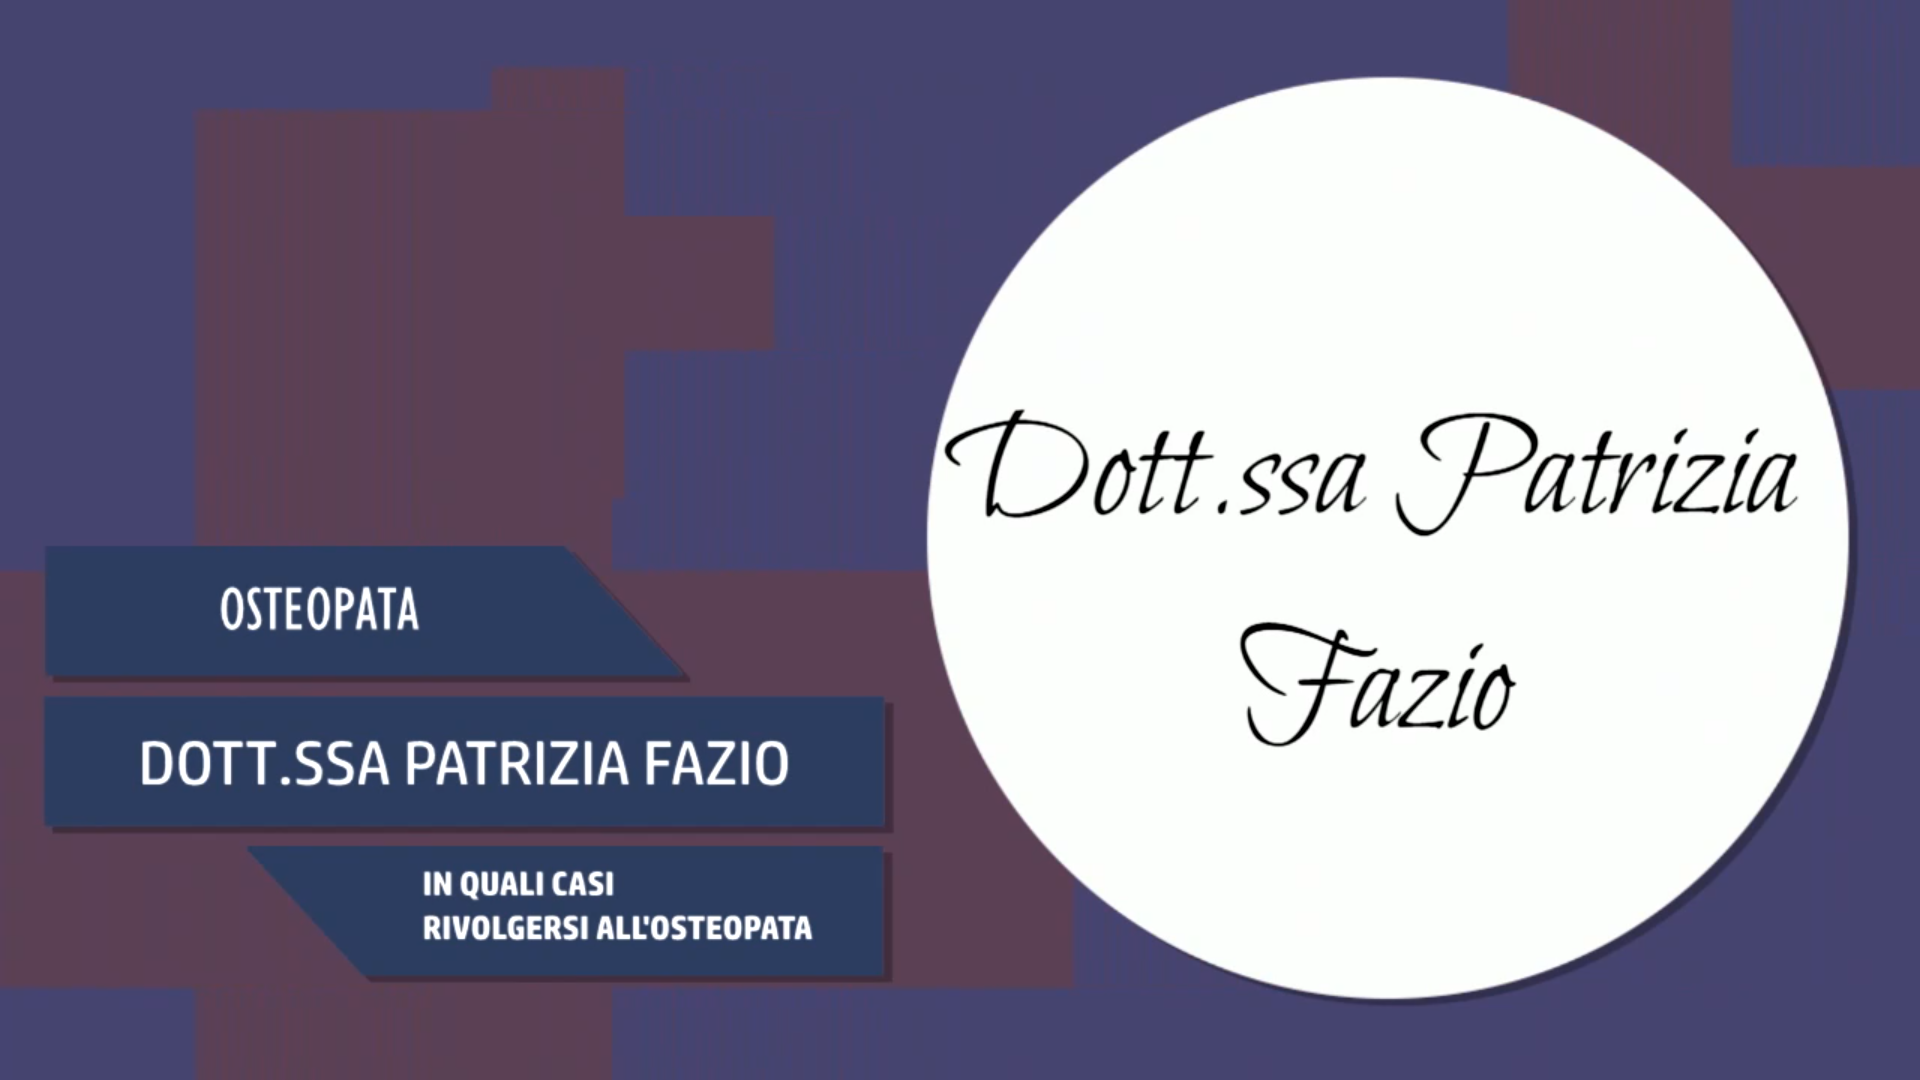 Intervista alla Dott.ssa Patrizia Fazio – Quando rivolgersi all’osteopata